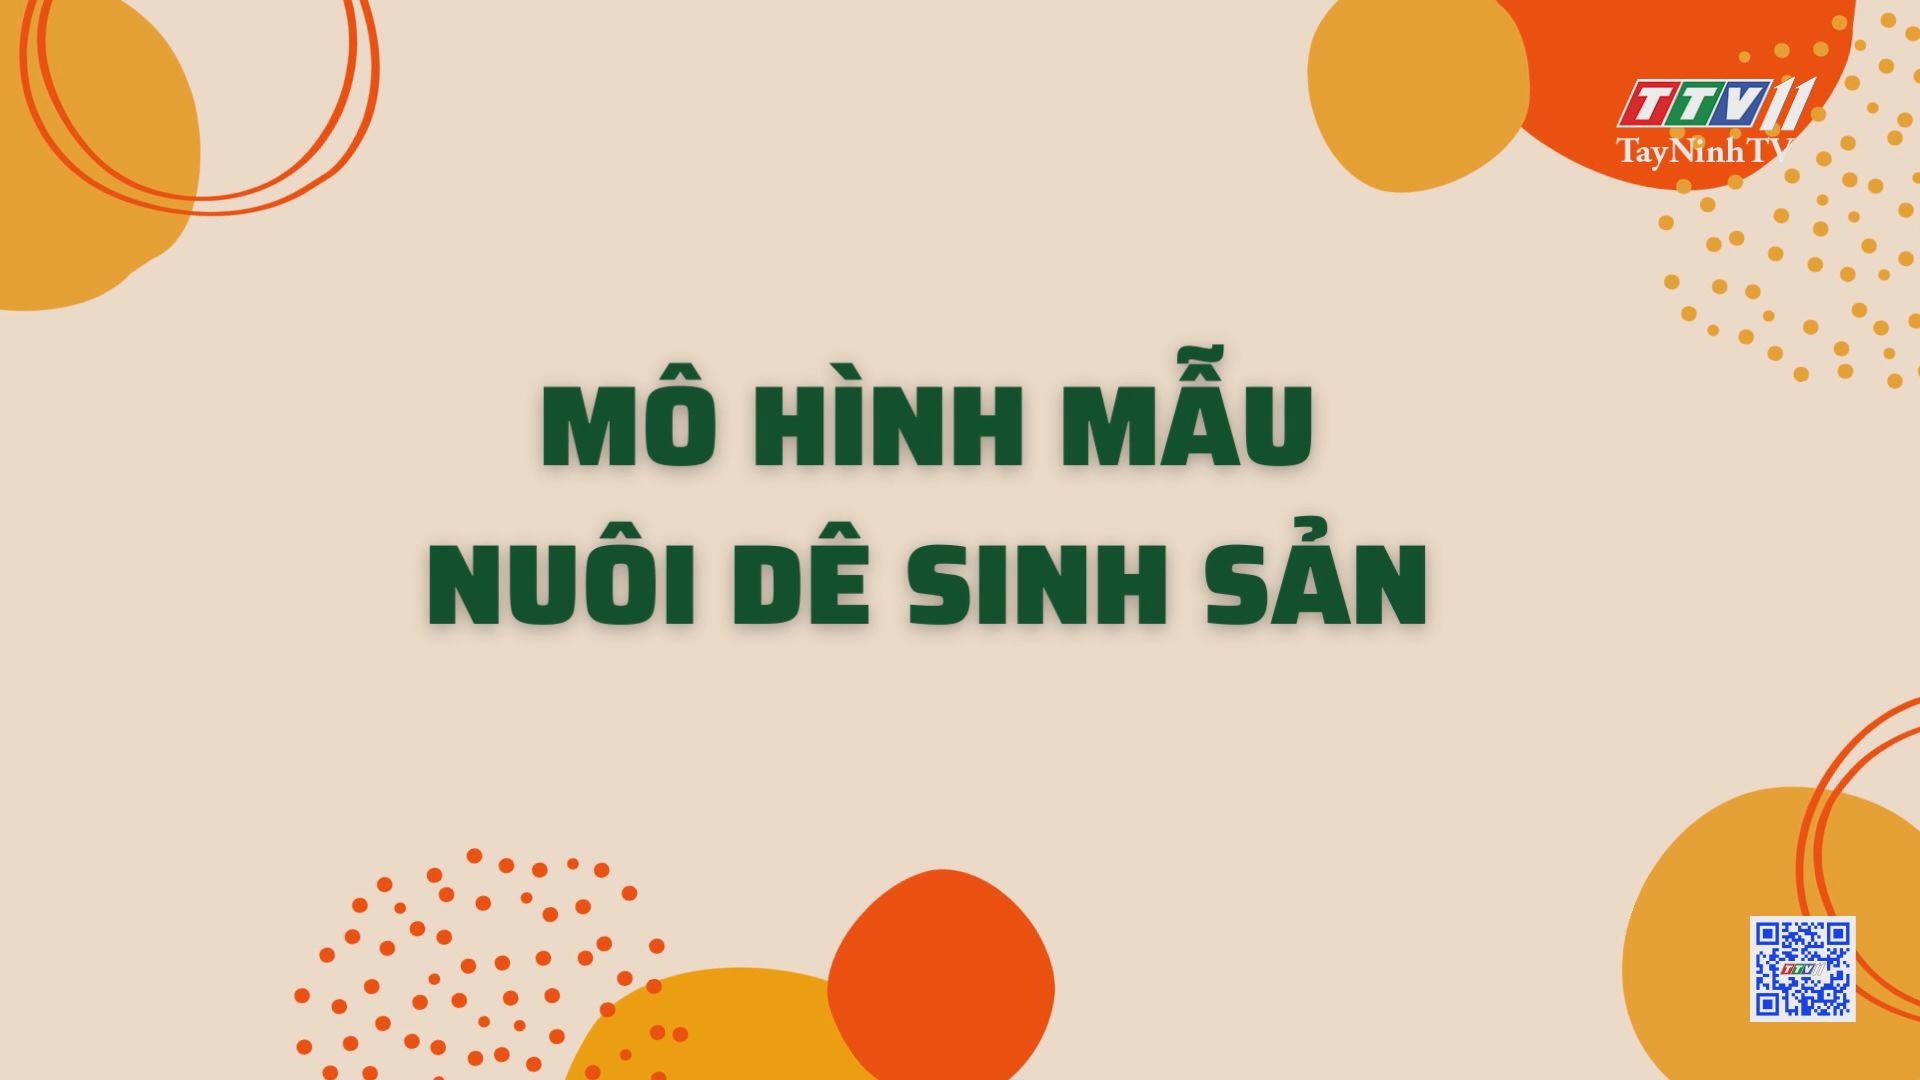 Mô hình mẫu nuôi dê sinh sản | Nông nghiệp Tây Ninh | TayNinhTV